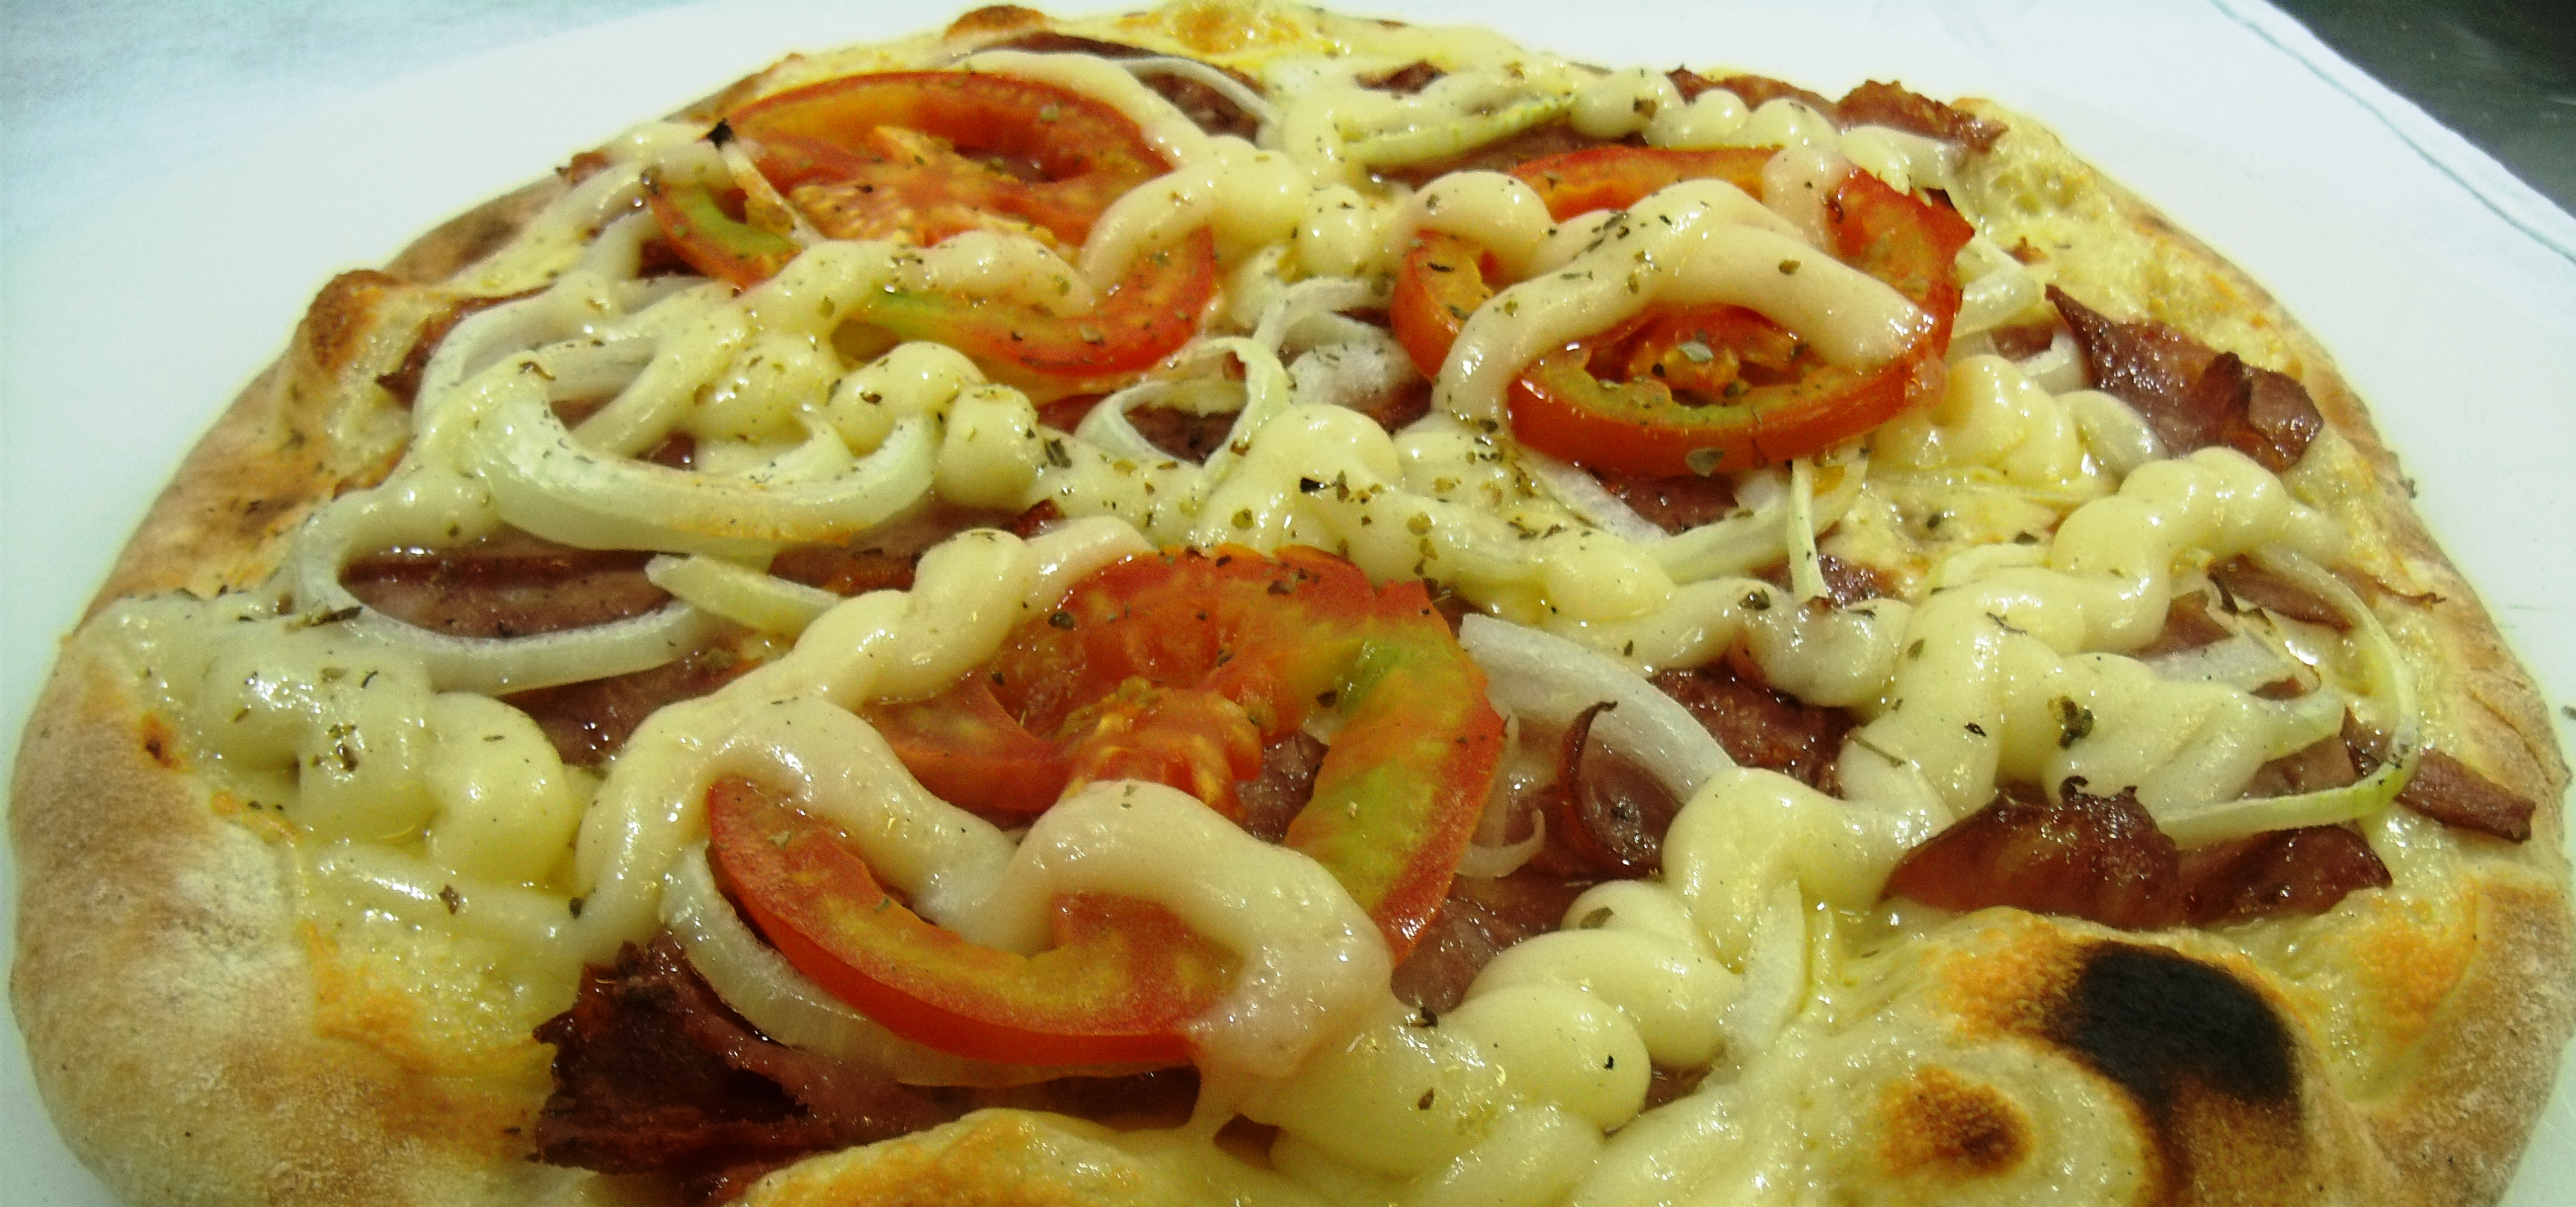 Siciliana Pizzaria